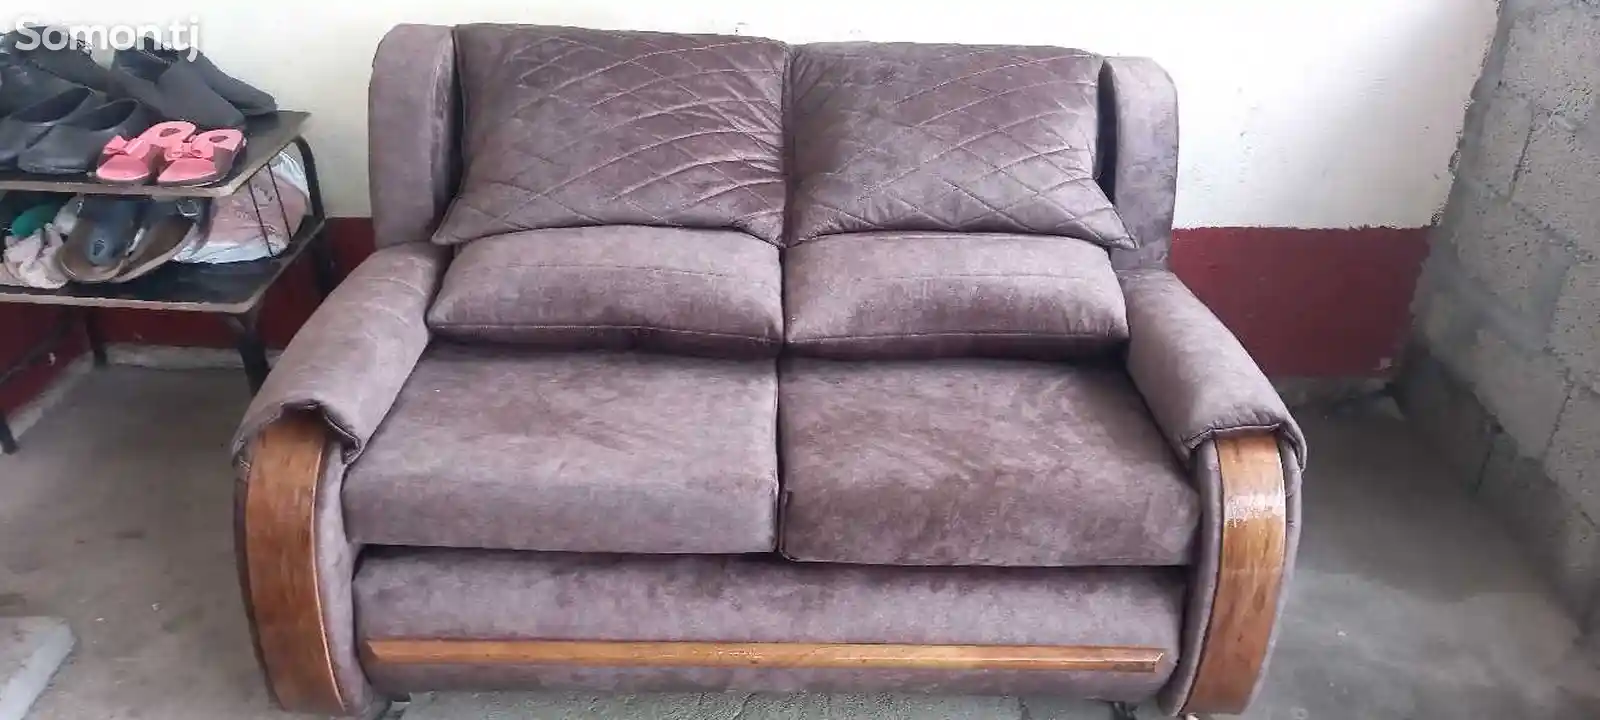 Реставрация диван и кресел-1